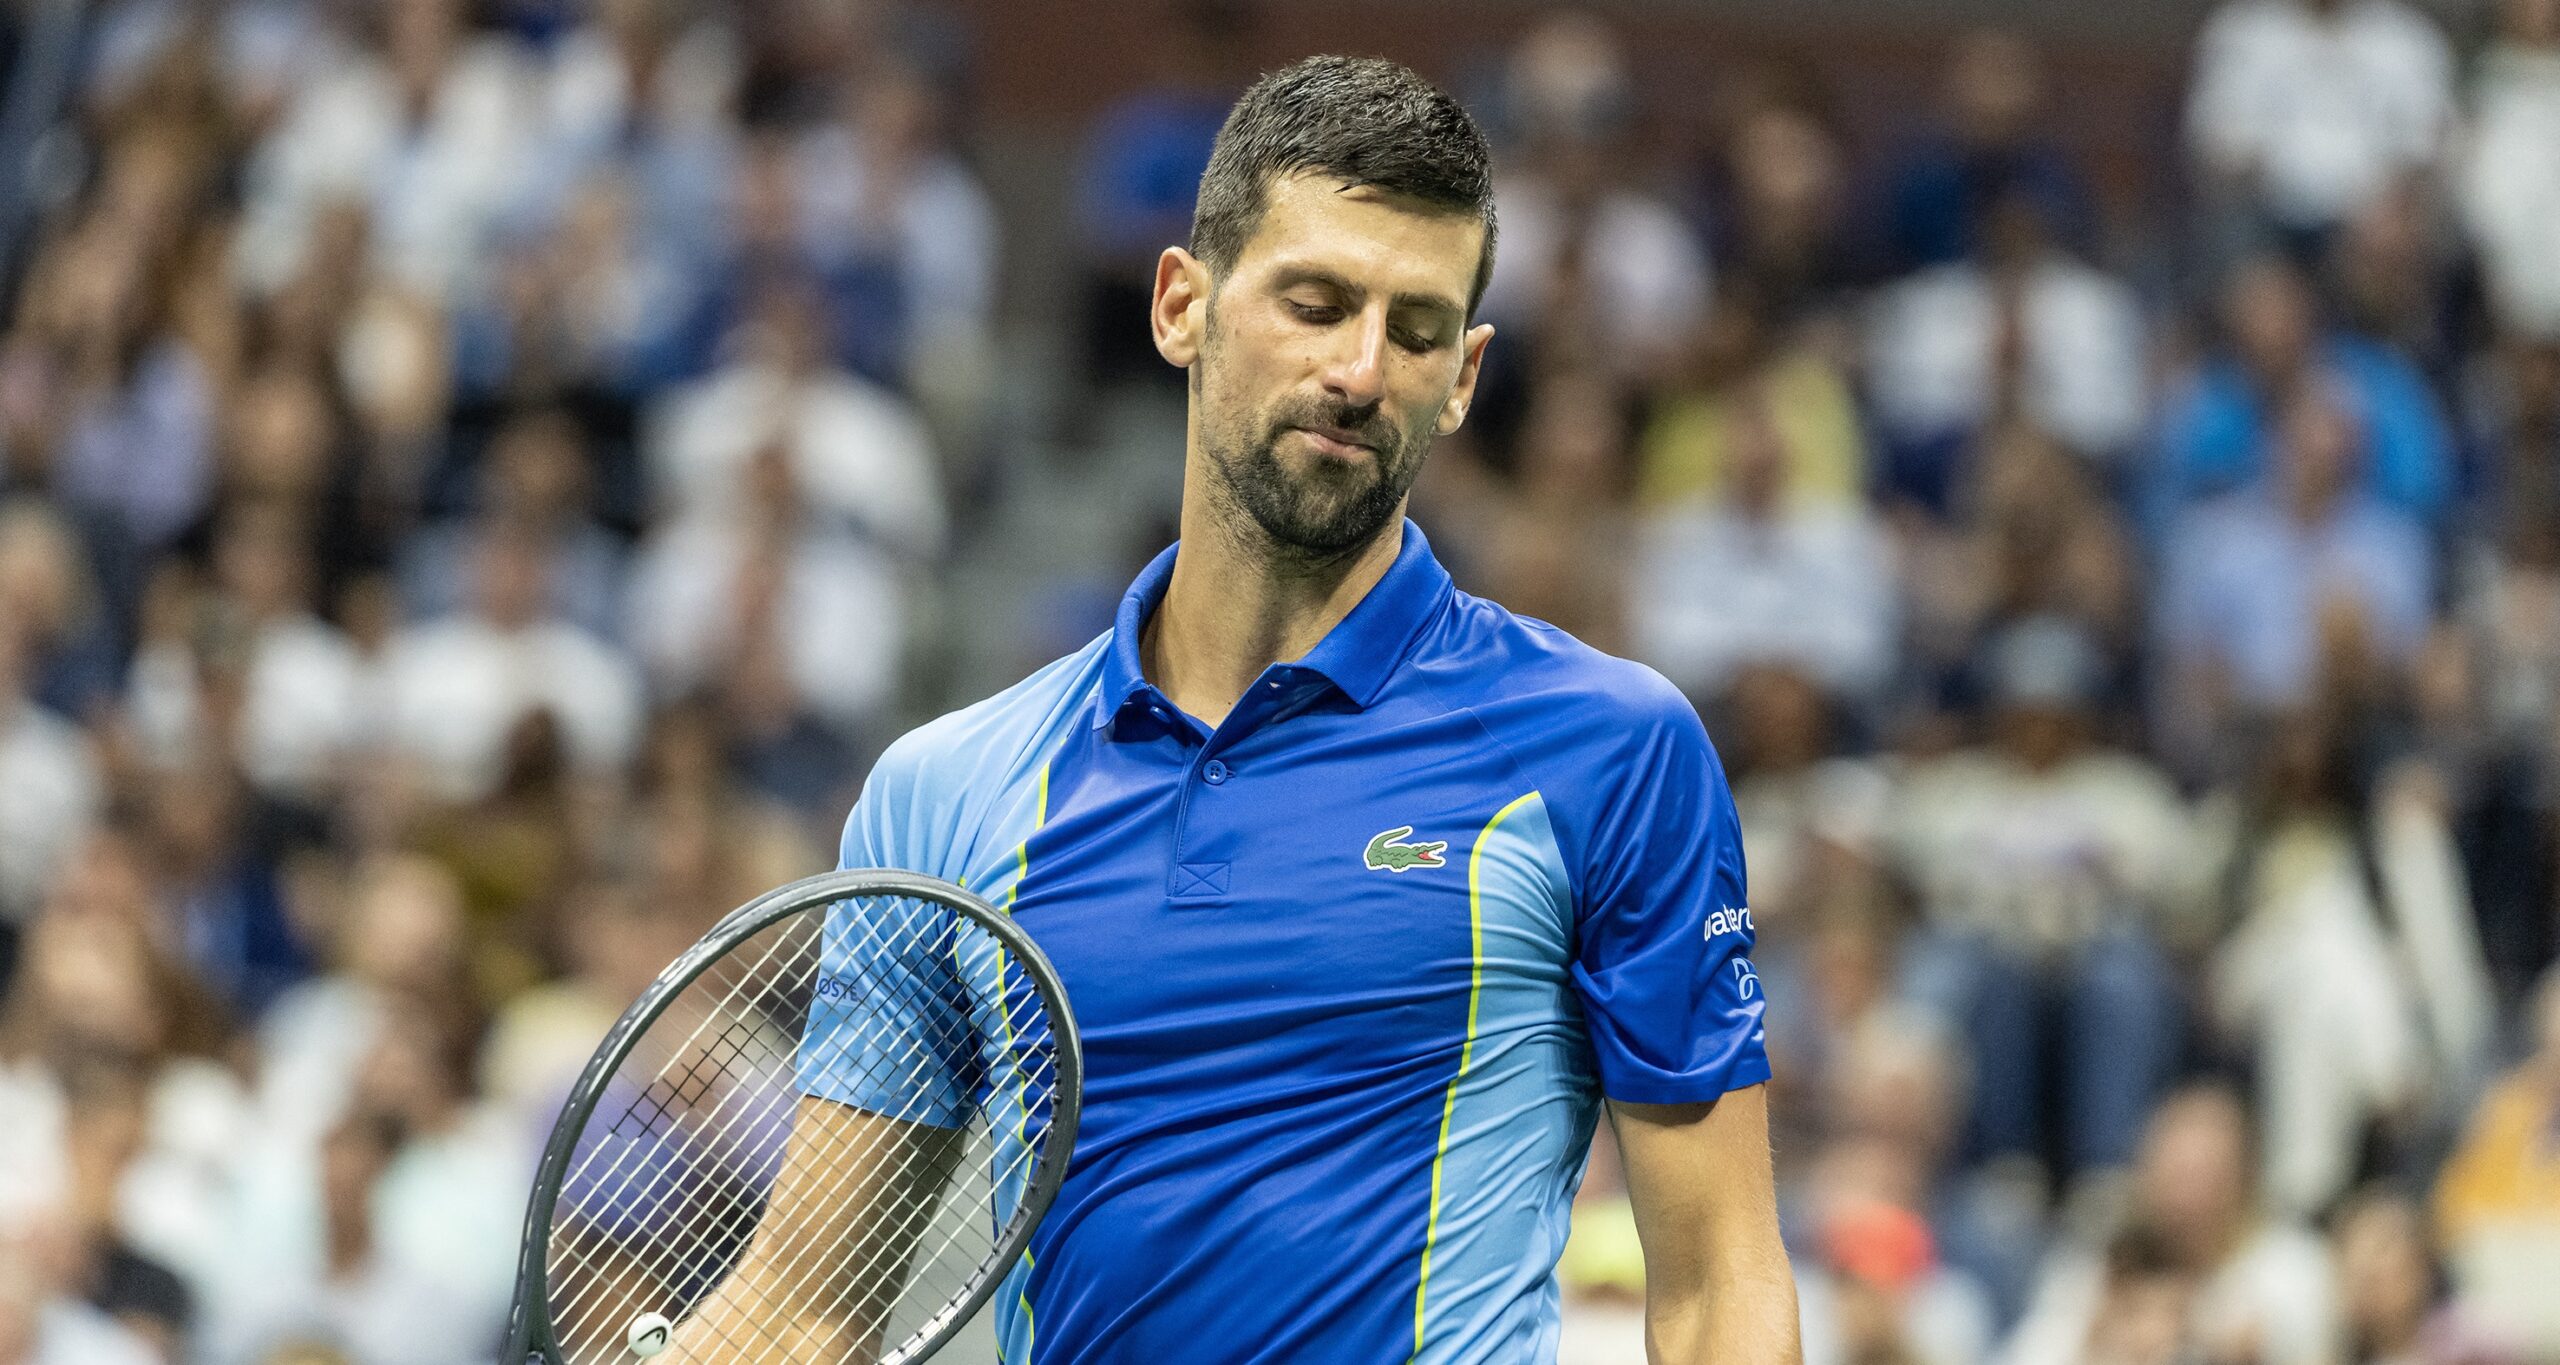 Anunț incredibil despre Novak Djokovic, după câștigarea US Open 2023: ”El ar trebui să răspundă”